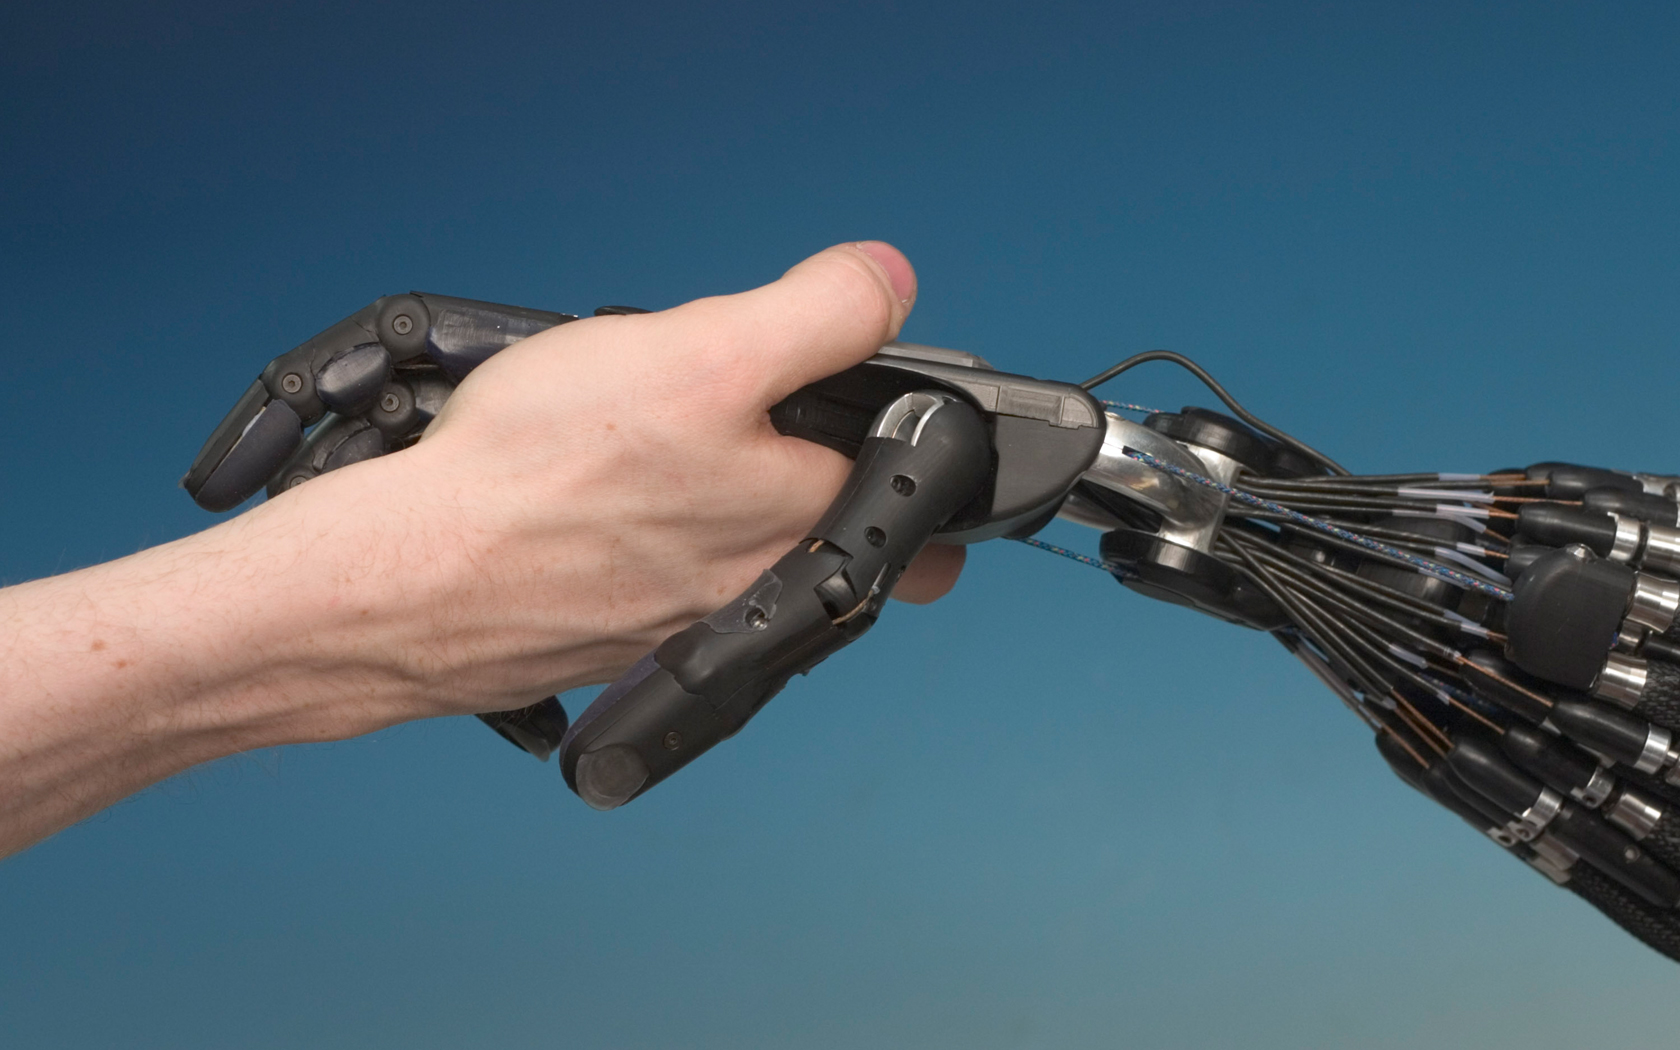 Hand holding a futuristic robot on a HD desktop wallpaper.